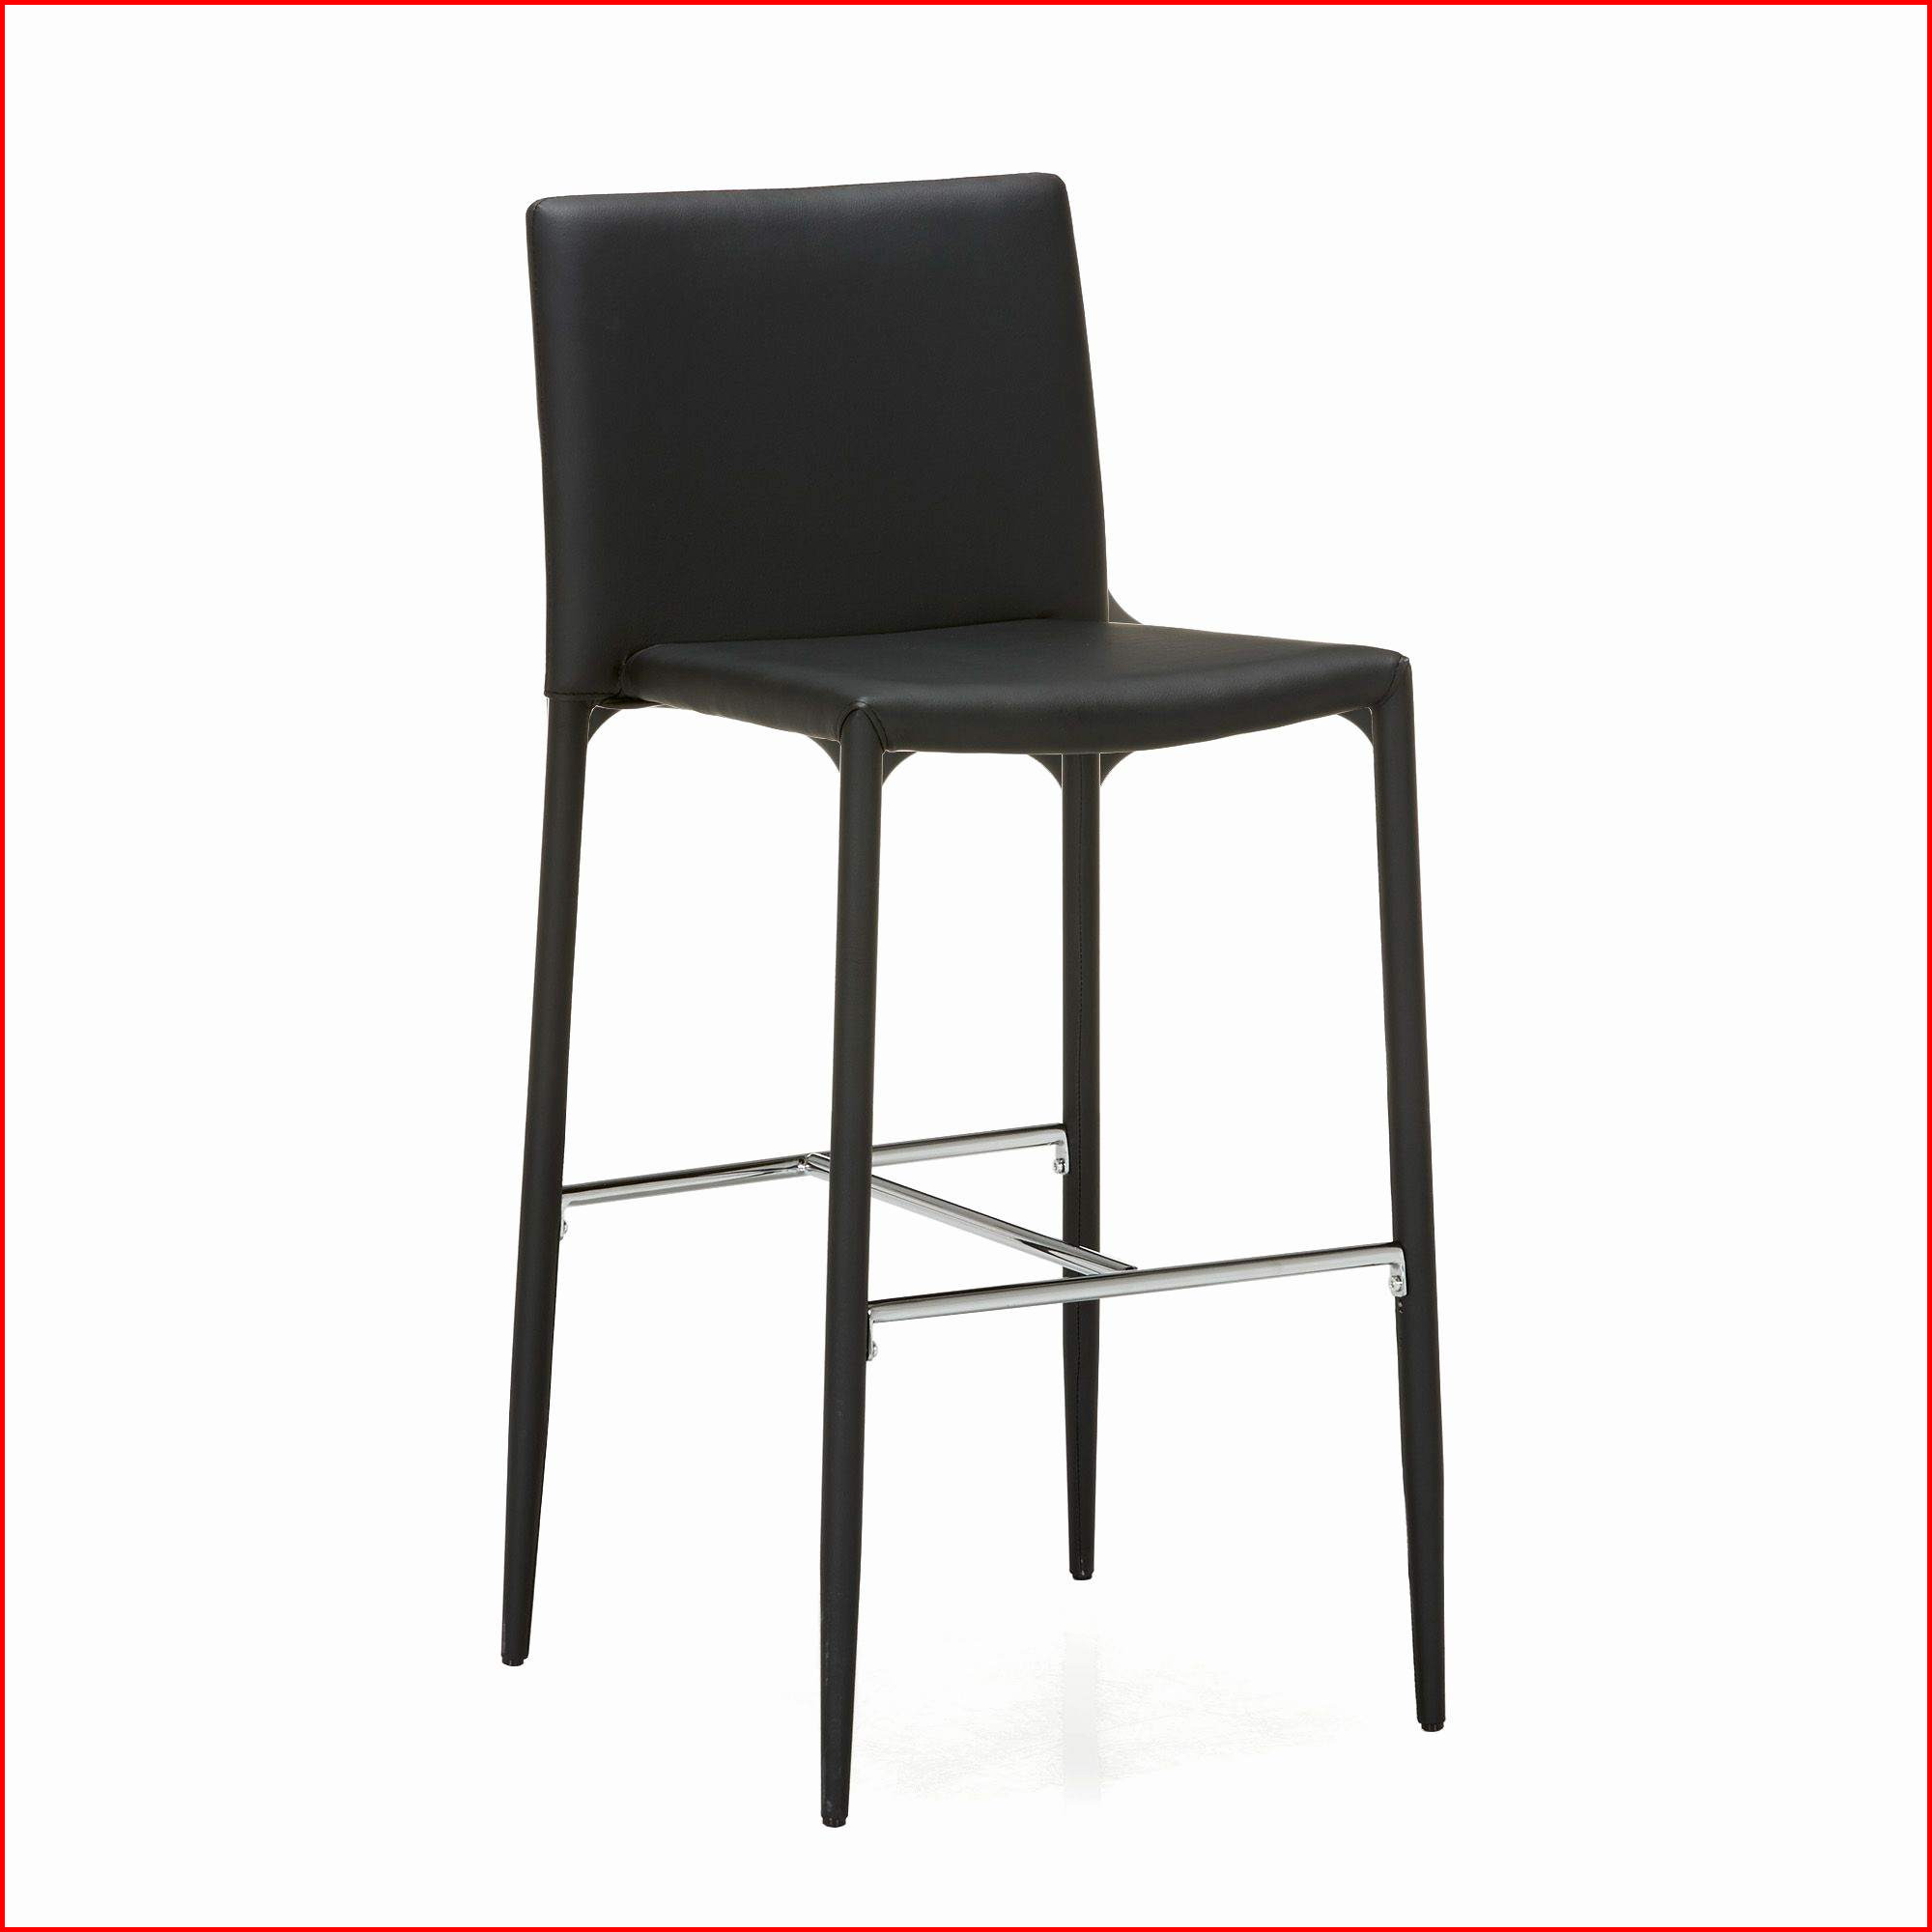 charmant chaise image de haute alinea ides interessant cuisine chaise haute alinea cuisine beau table et chaises de of